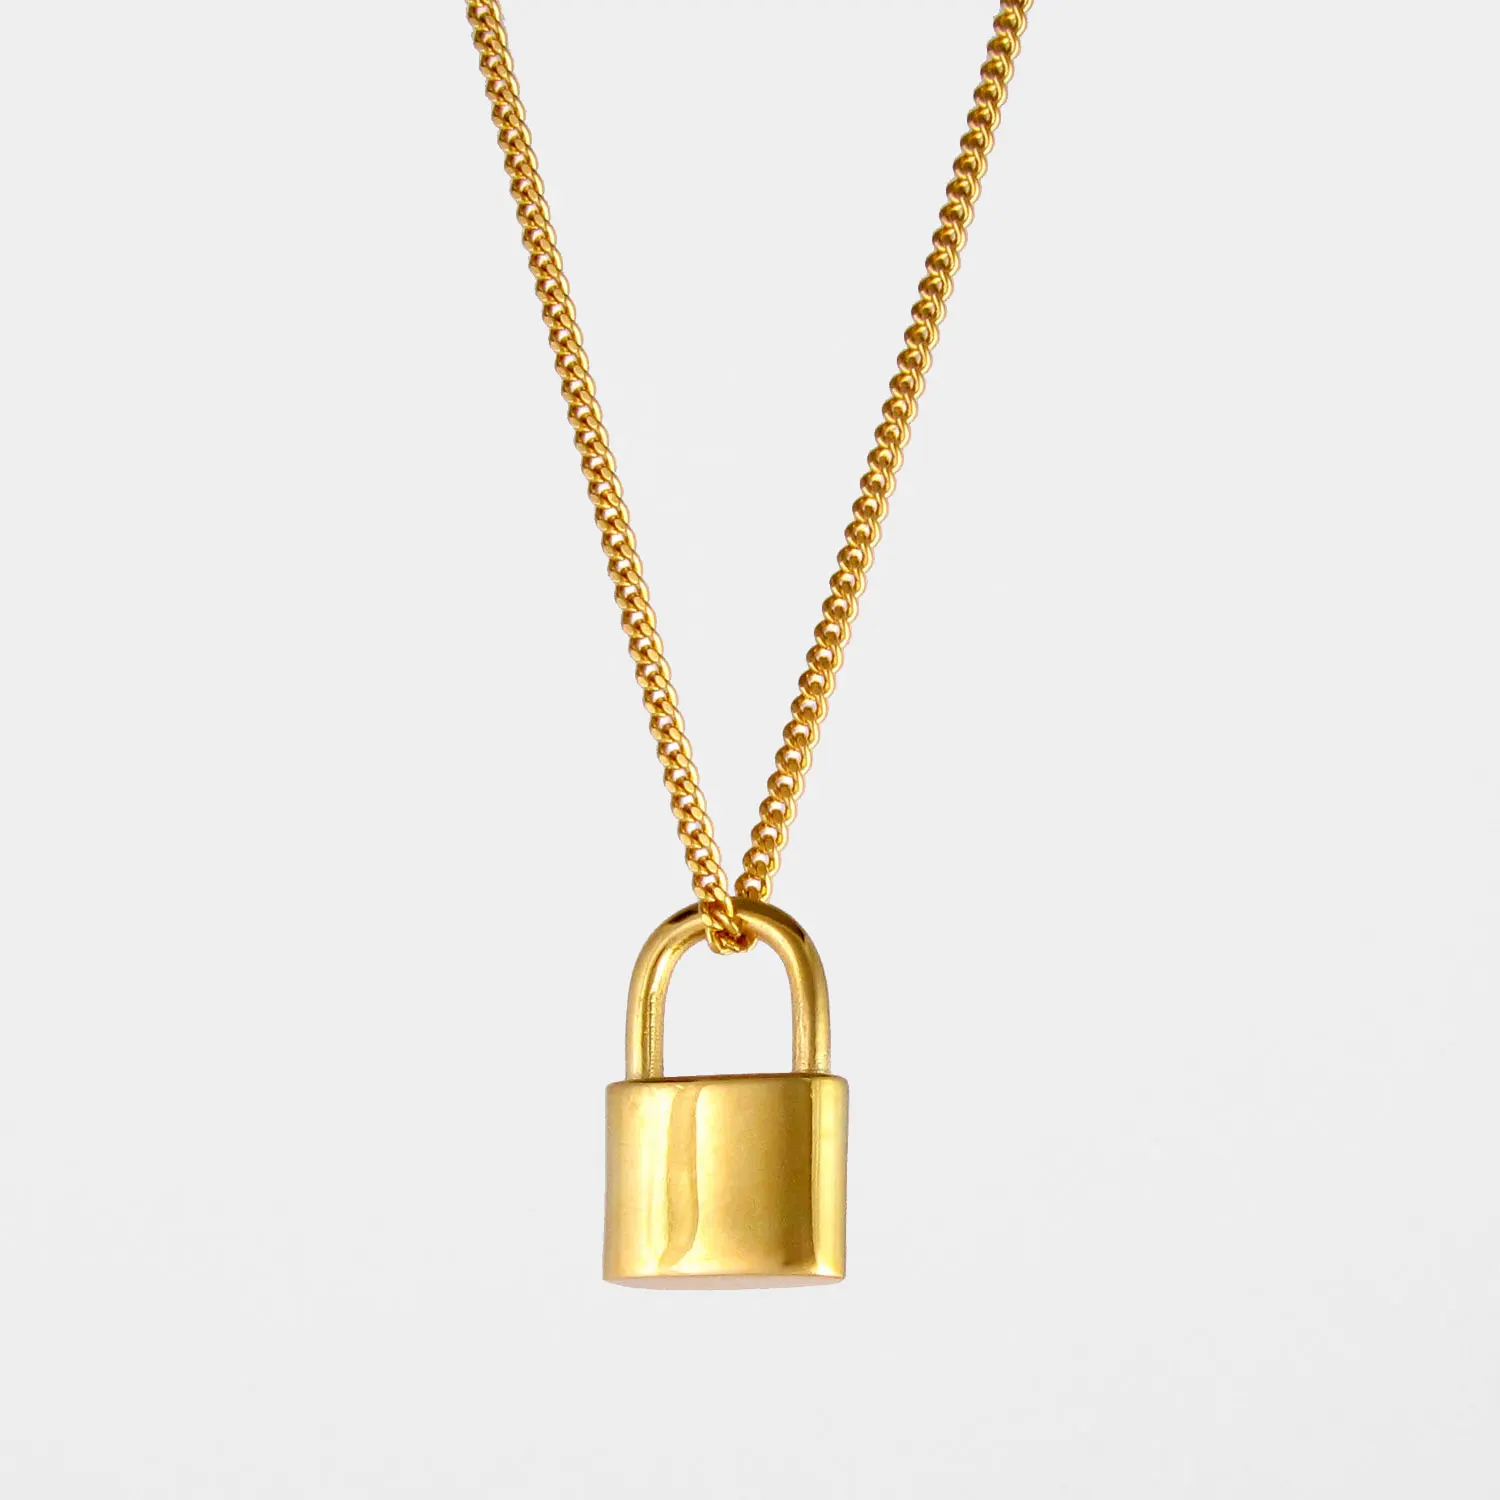 Men's Gold Padlock Necklace Pendant